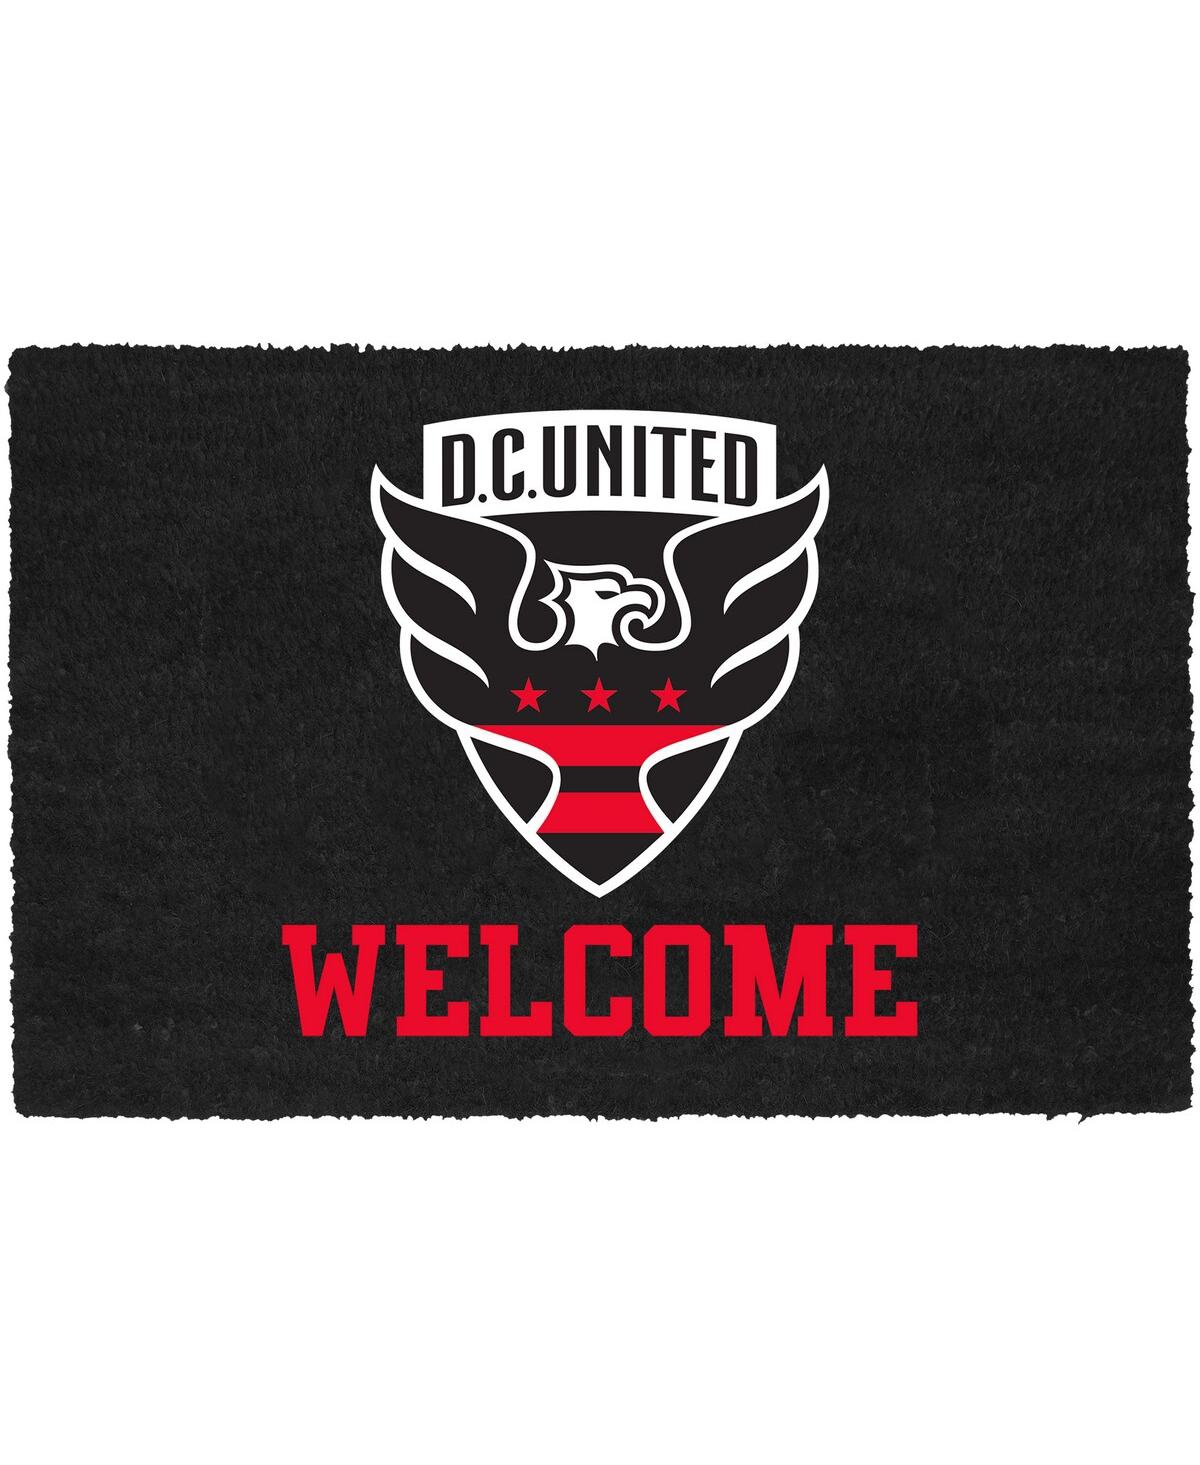 D.c. United Welcome Door Mat - Black